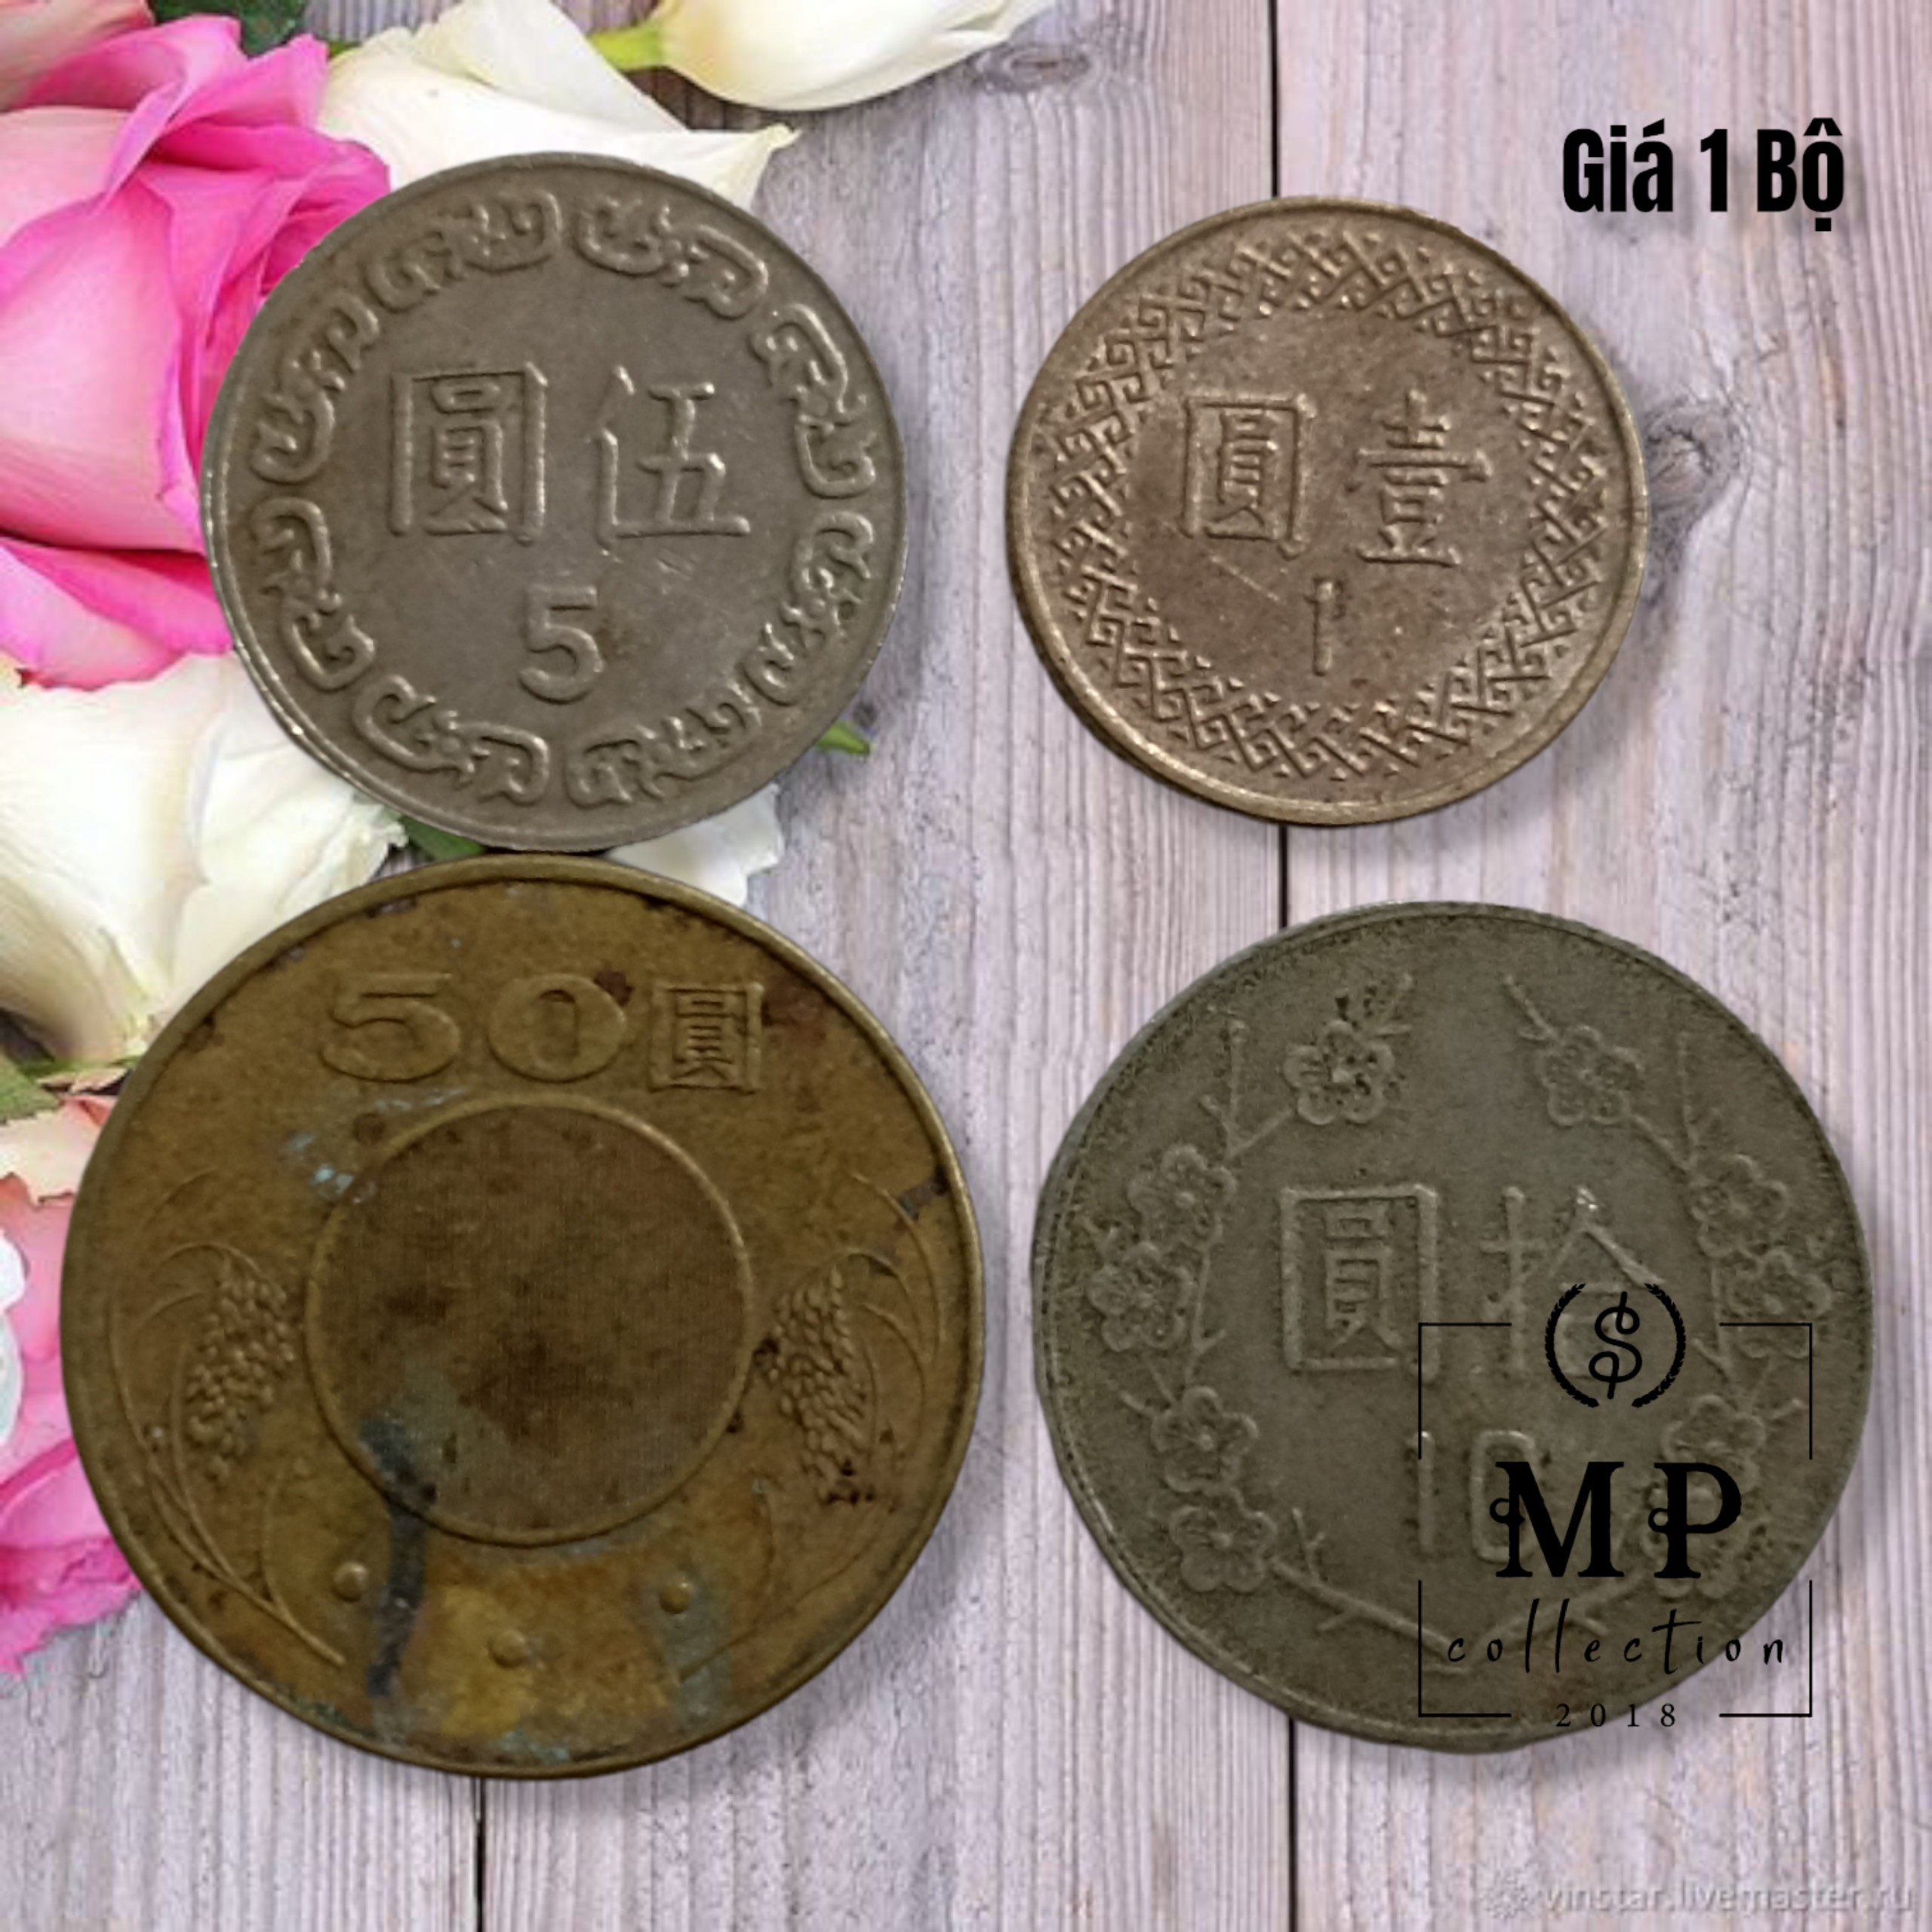 Bộ 4 xu Đài Loan Sưu tầm mẹnh giá 1 5 10 50 Yuan các năm khác nhau.